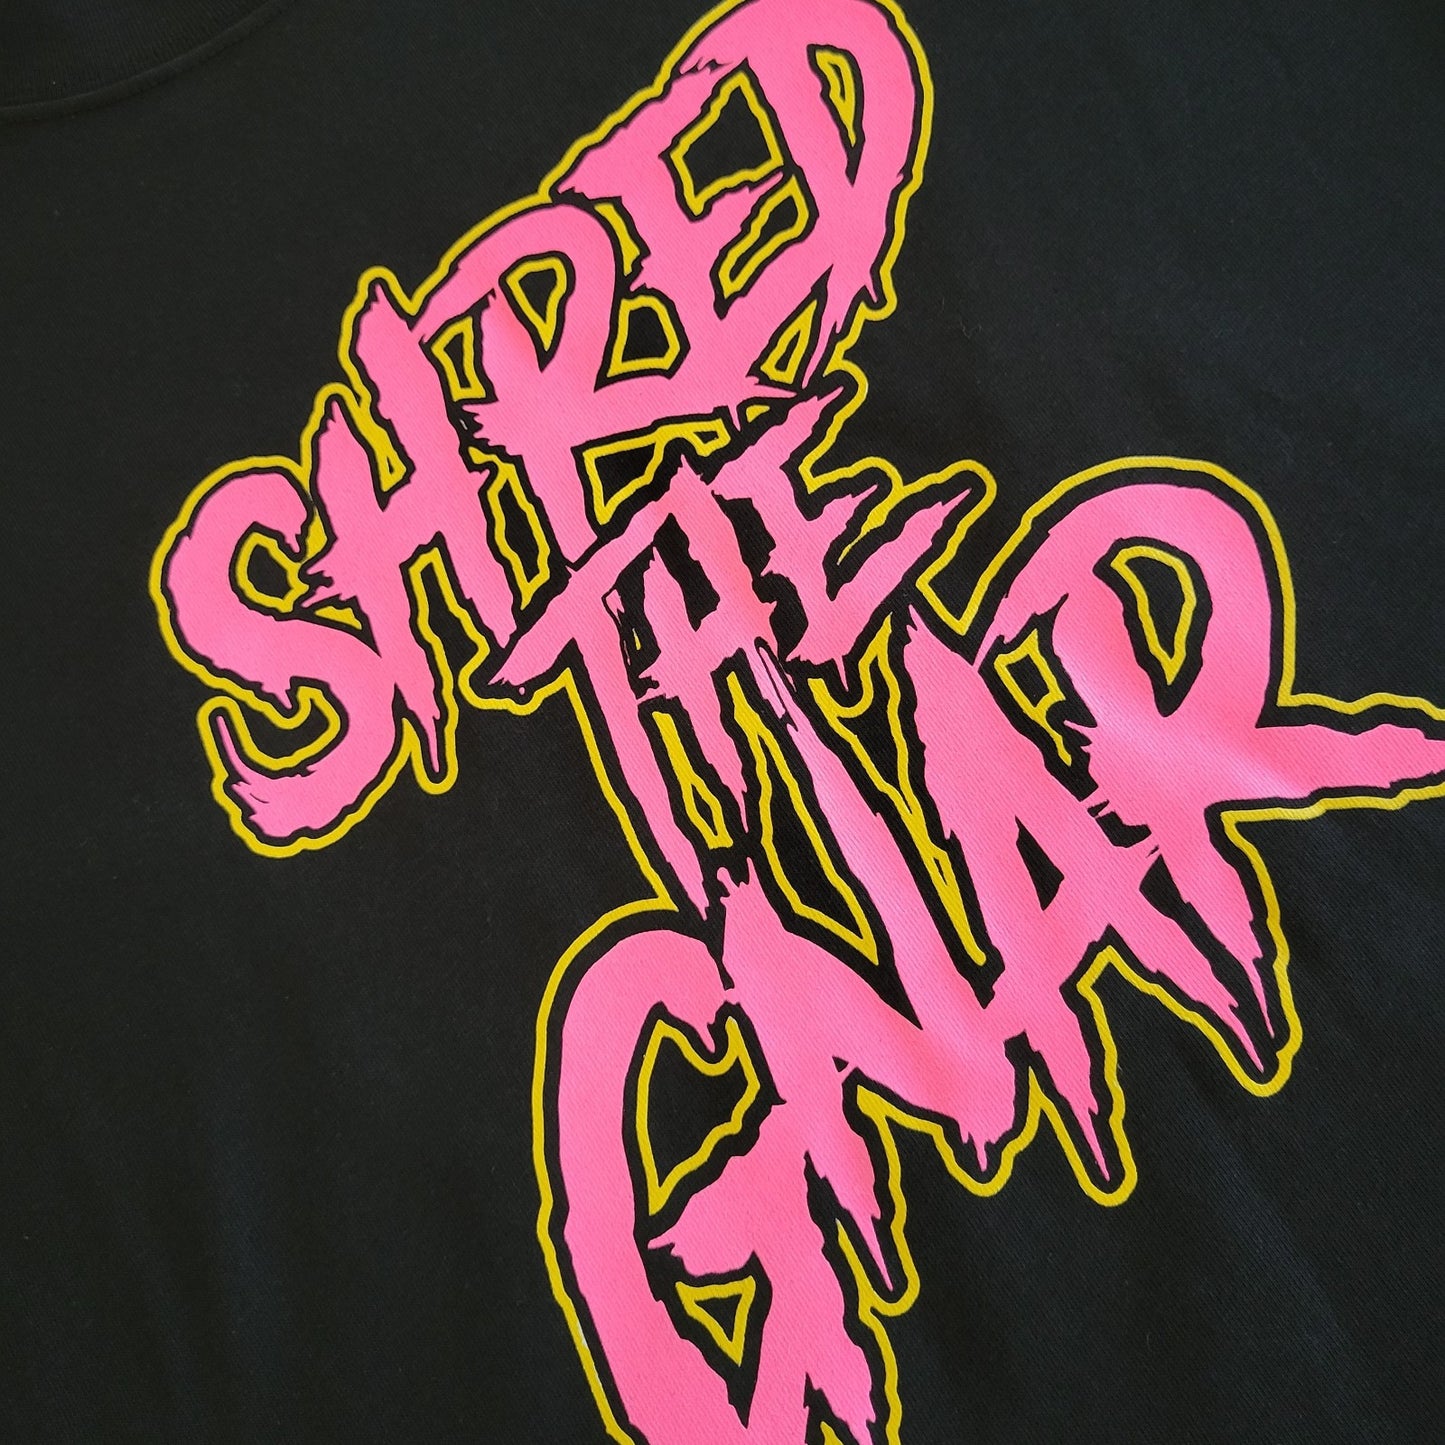 Shred The Gnar Tee - Black